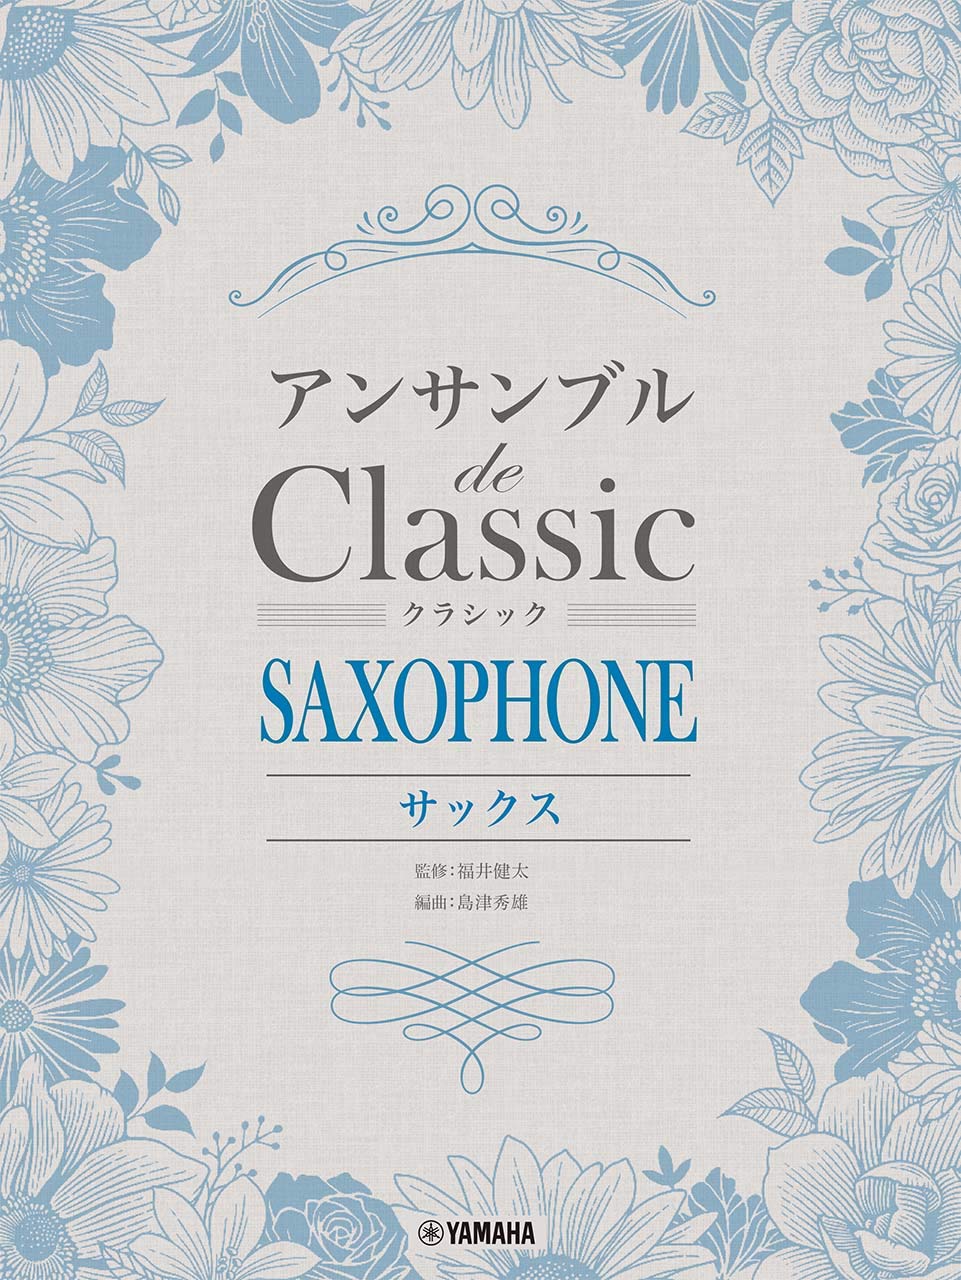 Ensemble de Classic for Saxophone